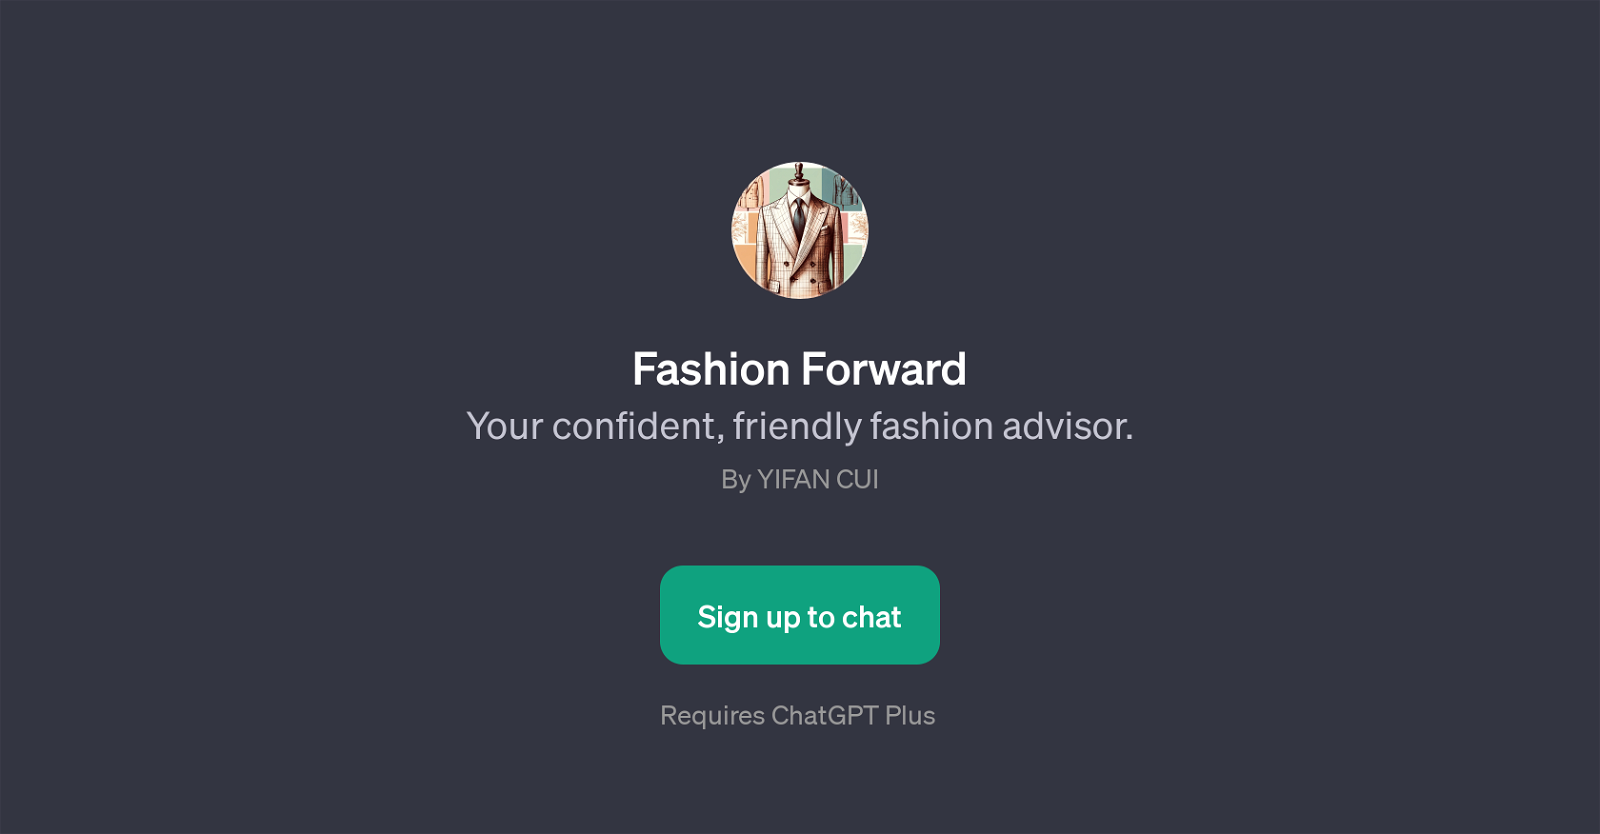 Fashion Forward website